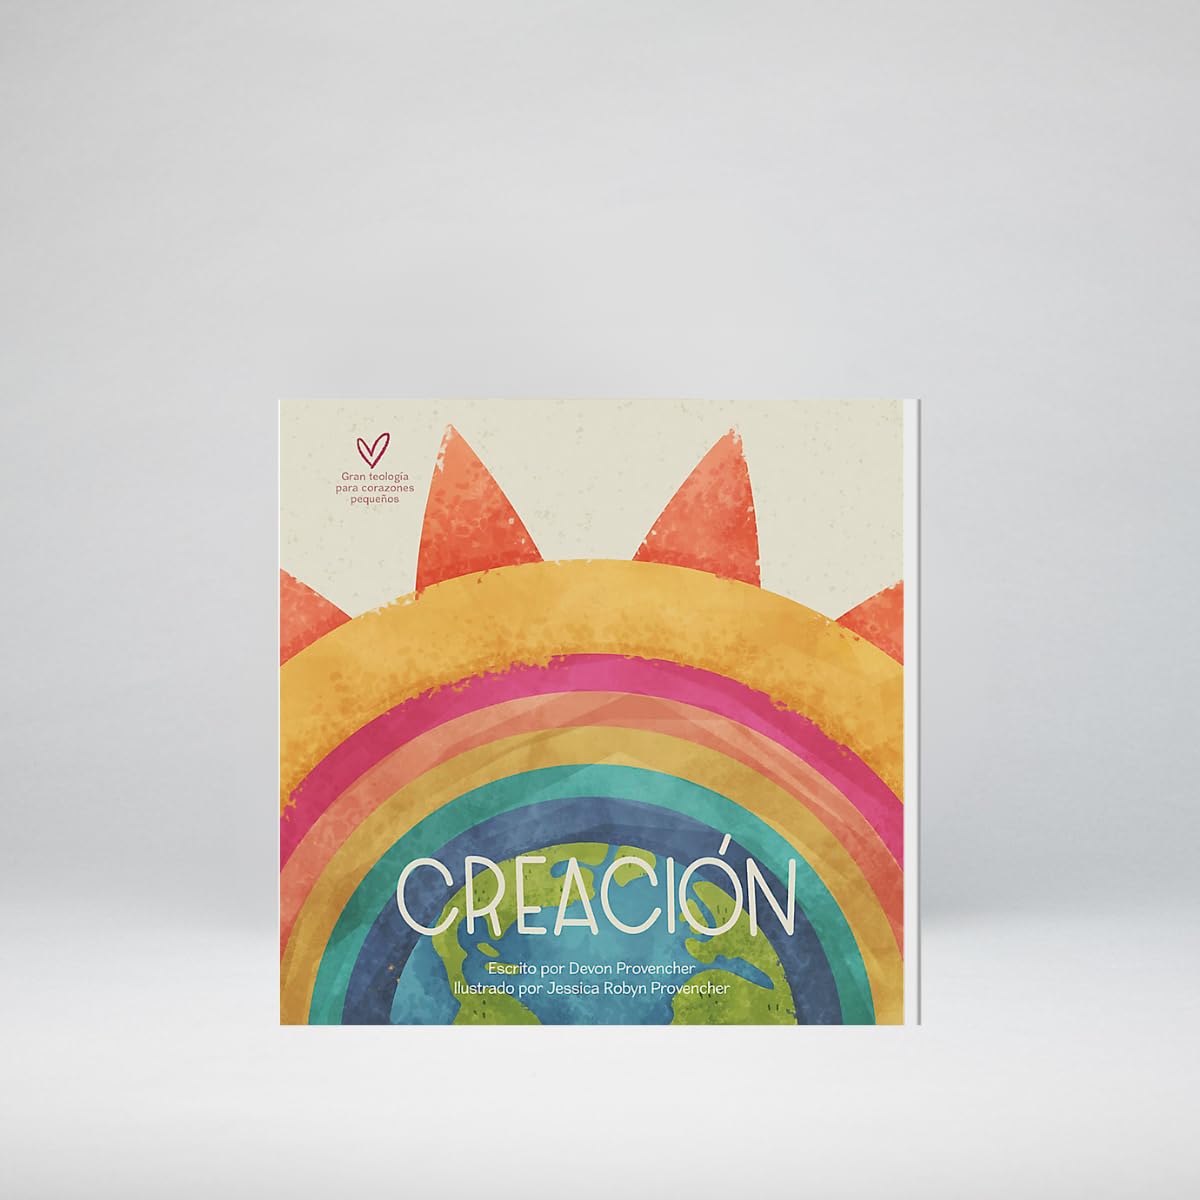 Creación | Creation (Teología grande para corazones pequeños) (Spanish Edition)